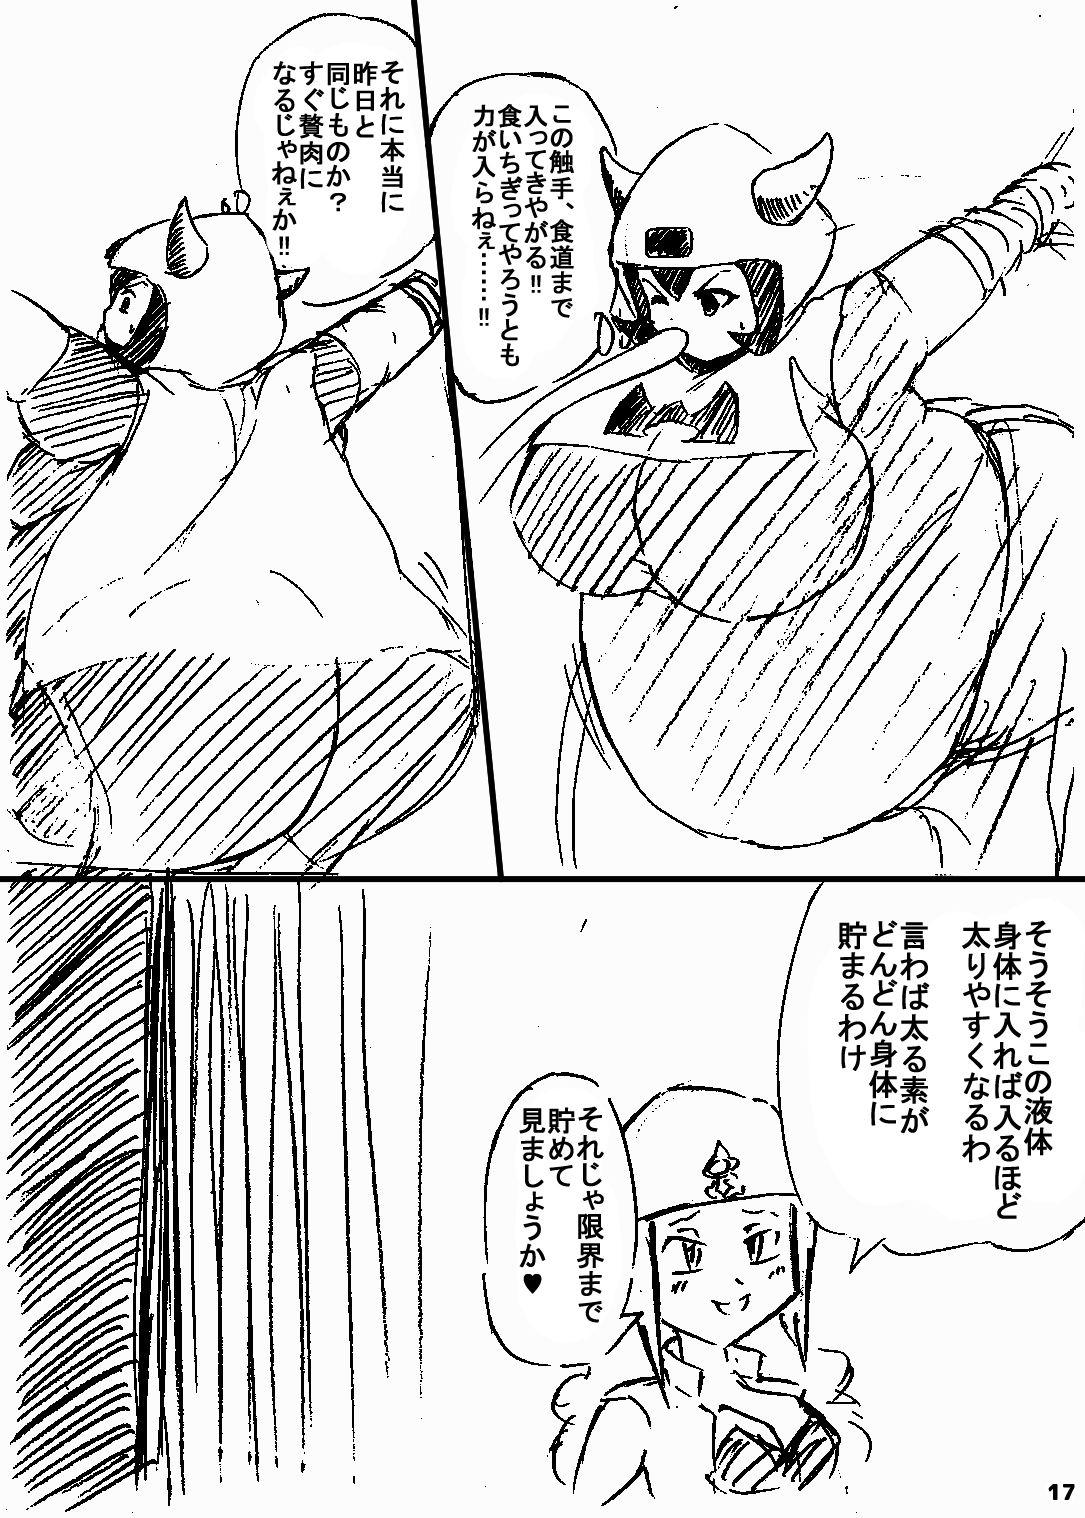 ポケスペカガリ肥満化漫画 15